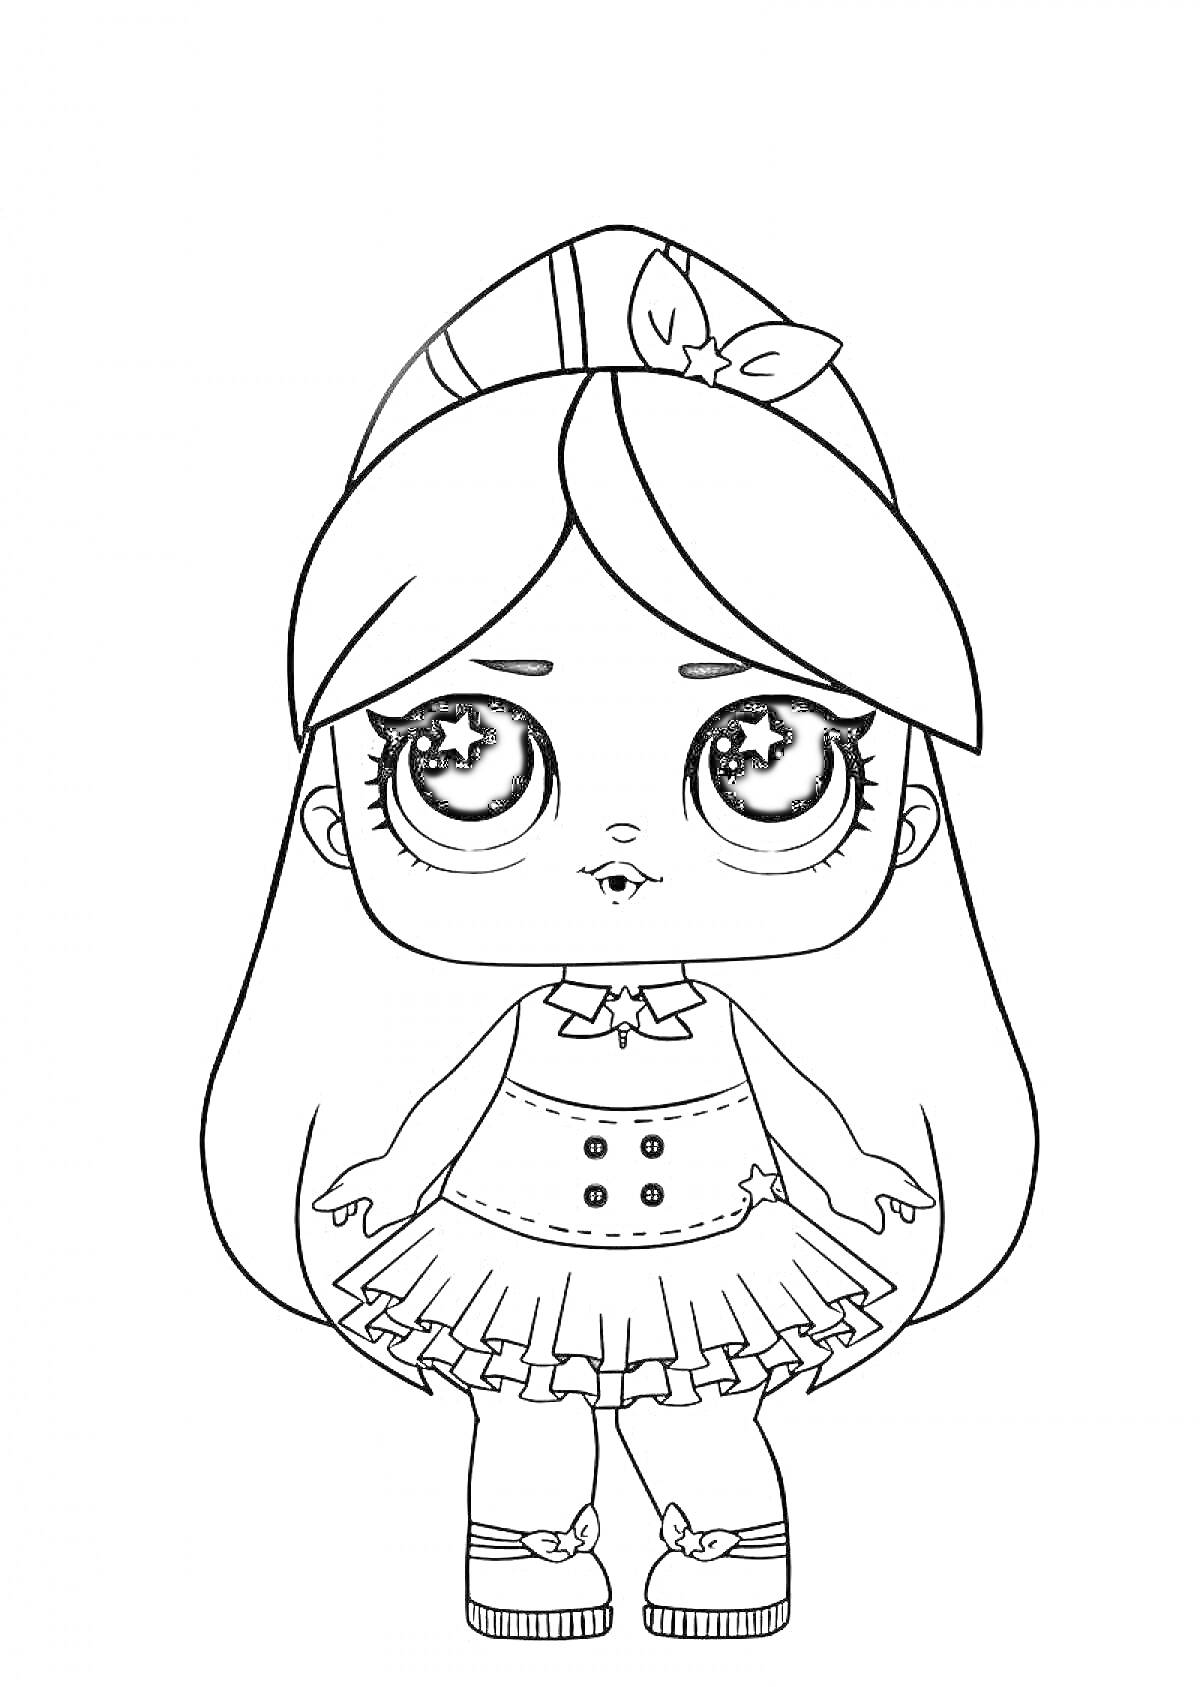 Раскраска Кукла ЛОЛ с длинными волосами, в платье с пуговицами, поясом и бантиком, с повязкой на голове и туфельками